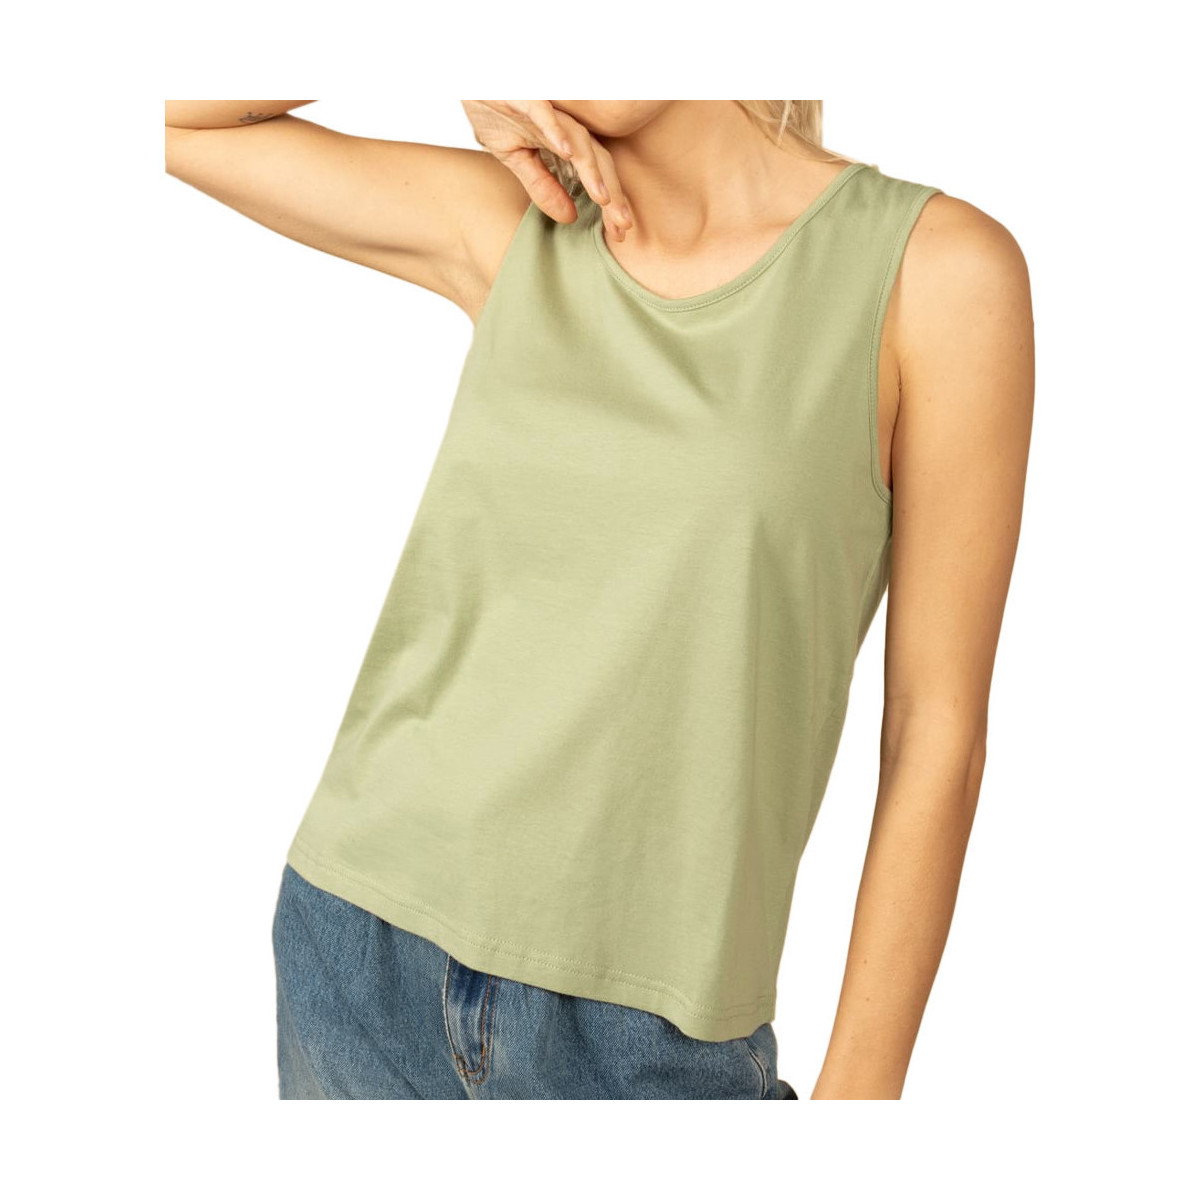 textil Mujer Camisetas sin mangas Deeluxe  Verde